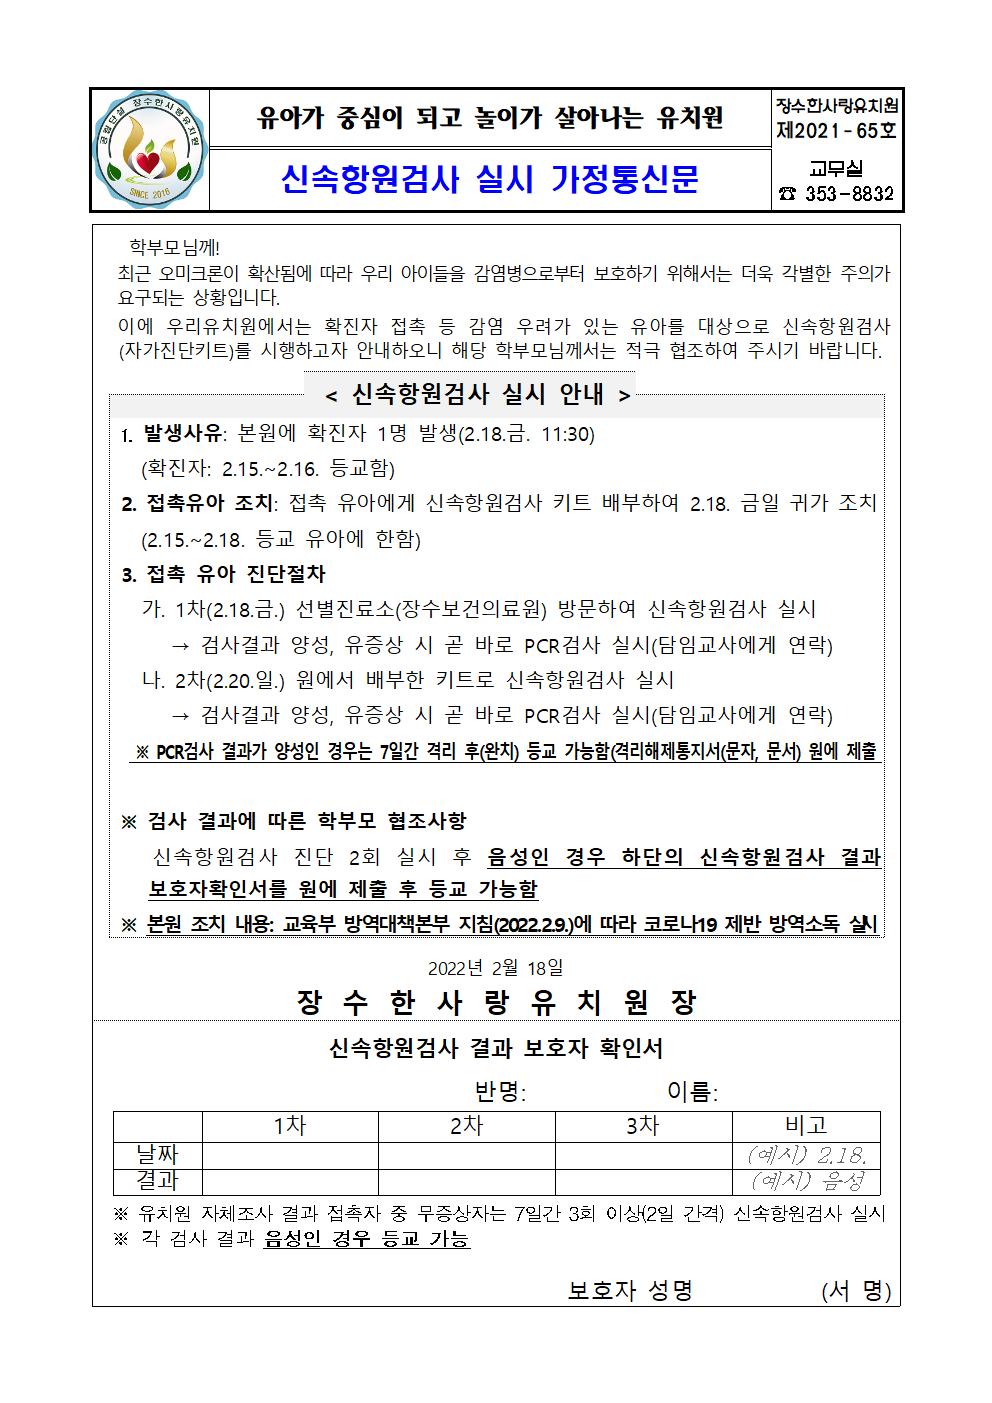 (가정통신문)신속항원검사 실시 가정통신문-밴드용001